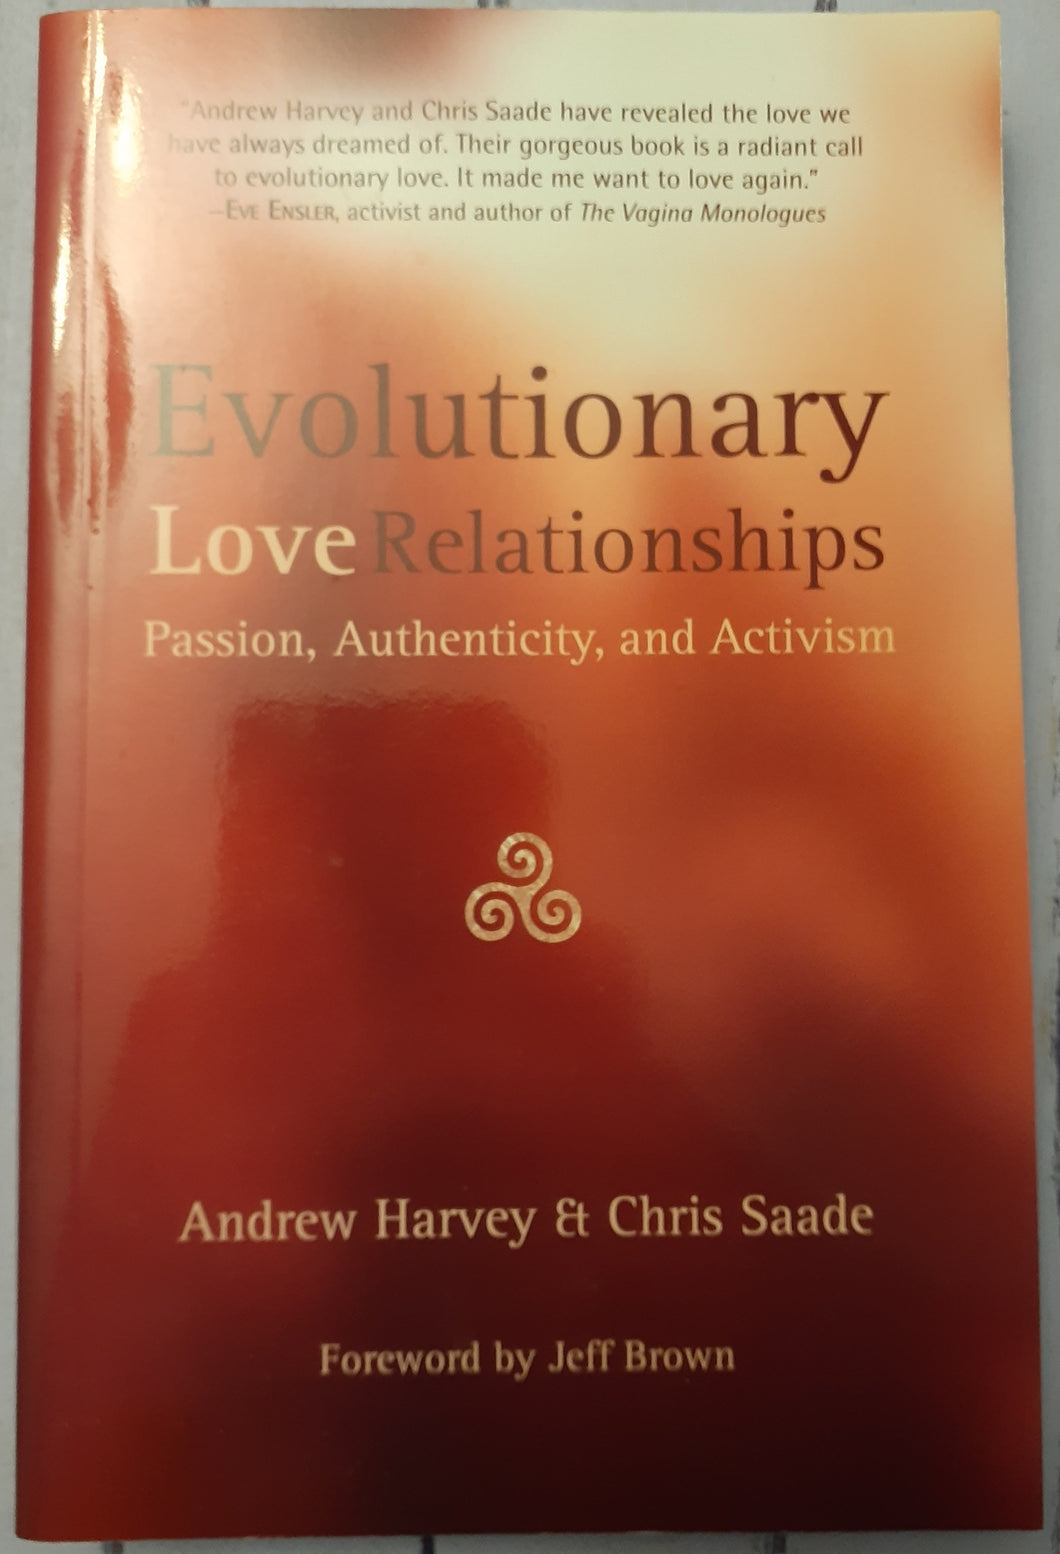 Evolutionary Love Relationships